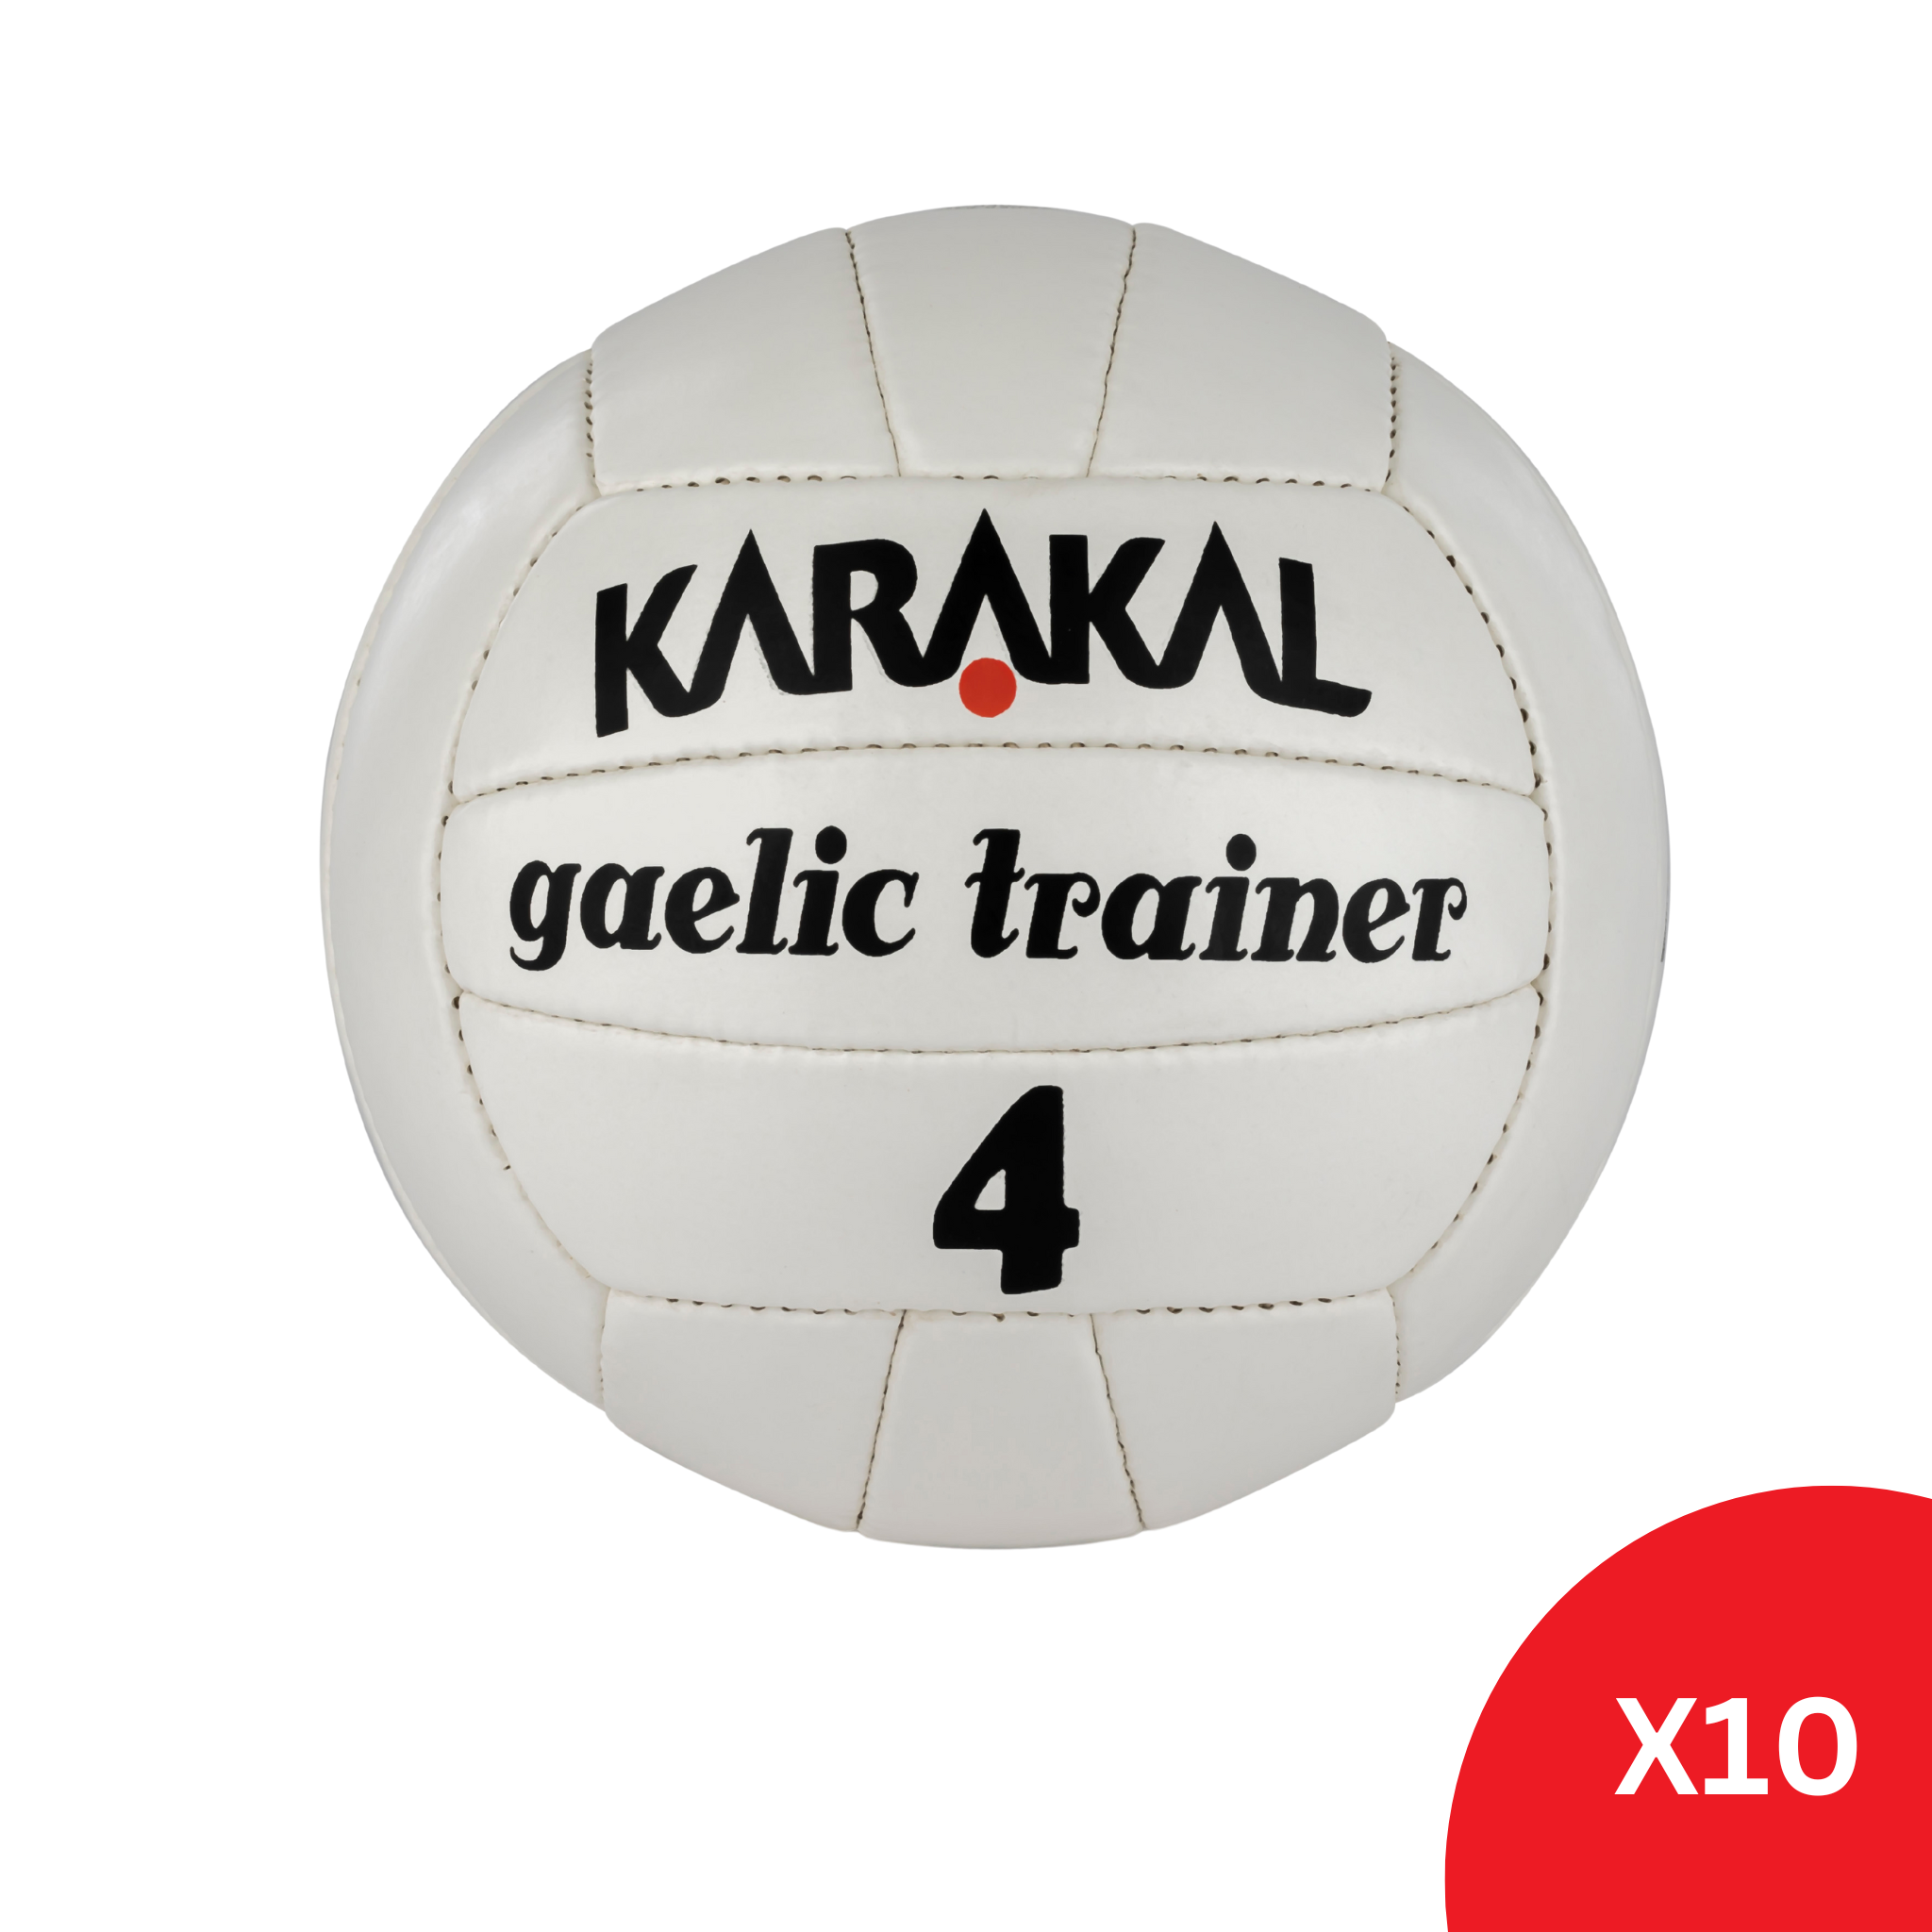 Karakal Gaelic Trainer Ball Size 4 - 10 Pack